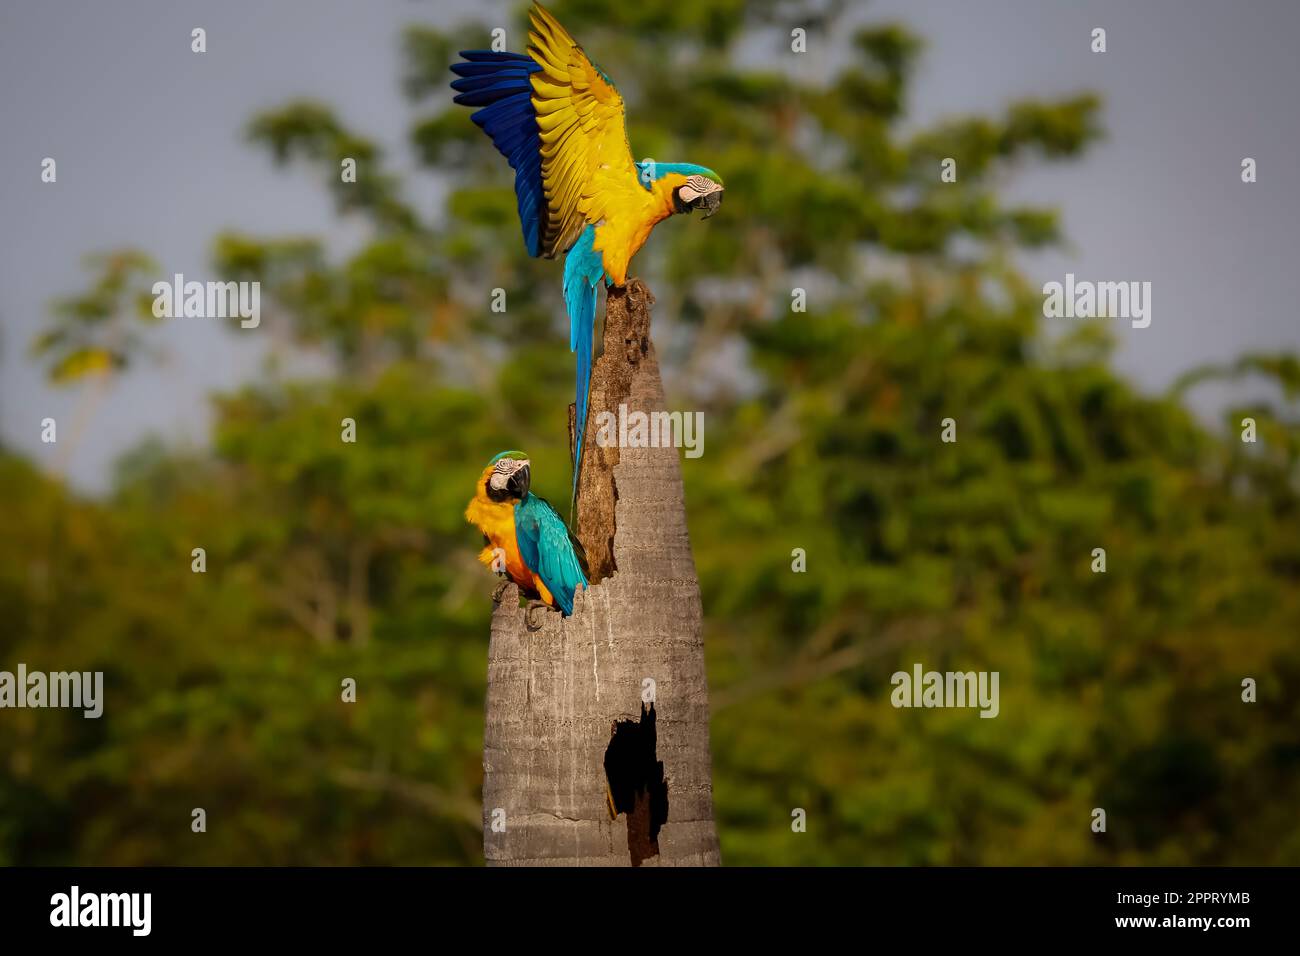 Zwei blau-gelbe Aras auf einem Palmstumpf, einer mit Flügeln, einer mit Blick nach rechts, Amazonia, San Jose do Rio Claro, Mato Grosso, Brasilien Stockfoto